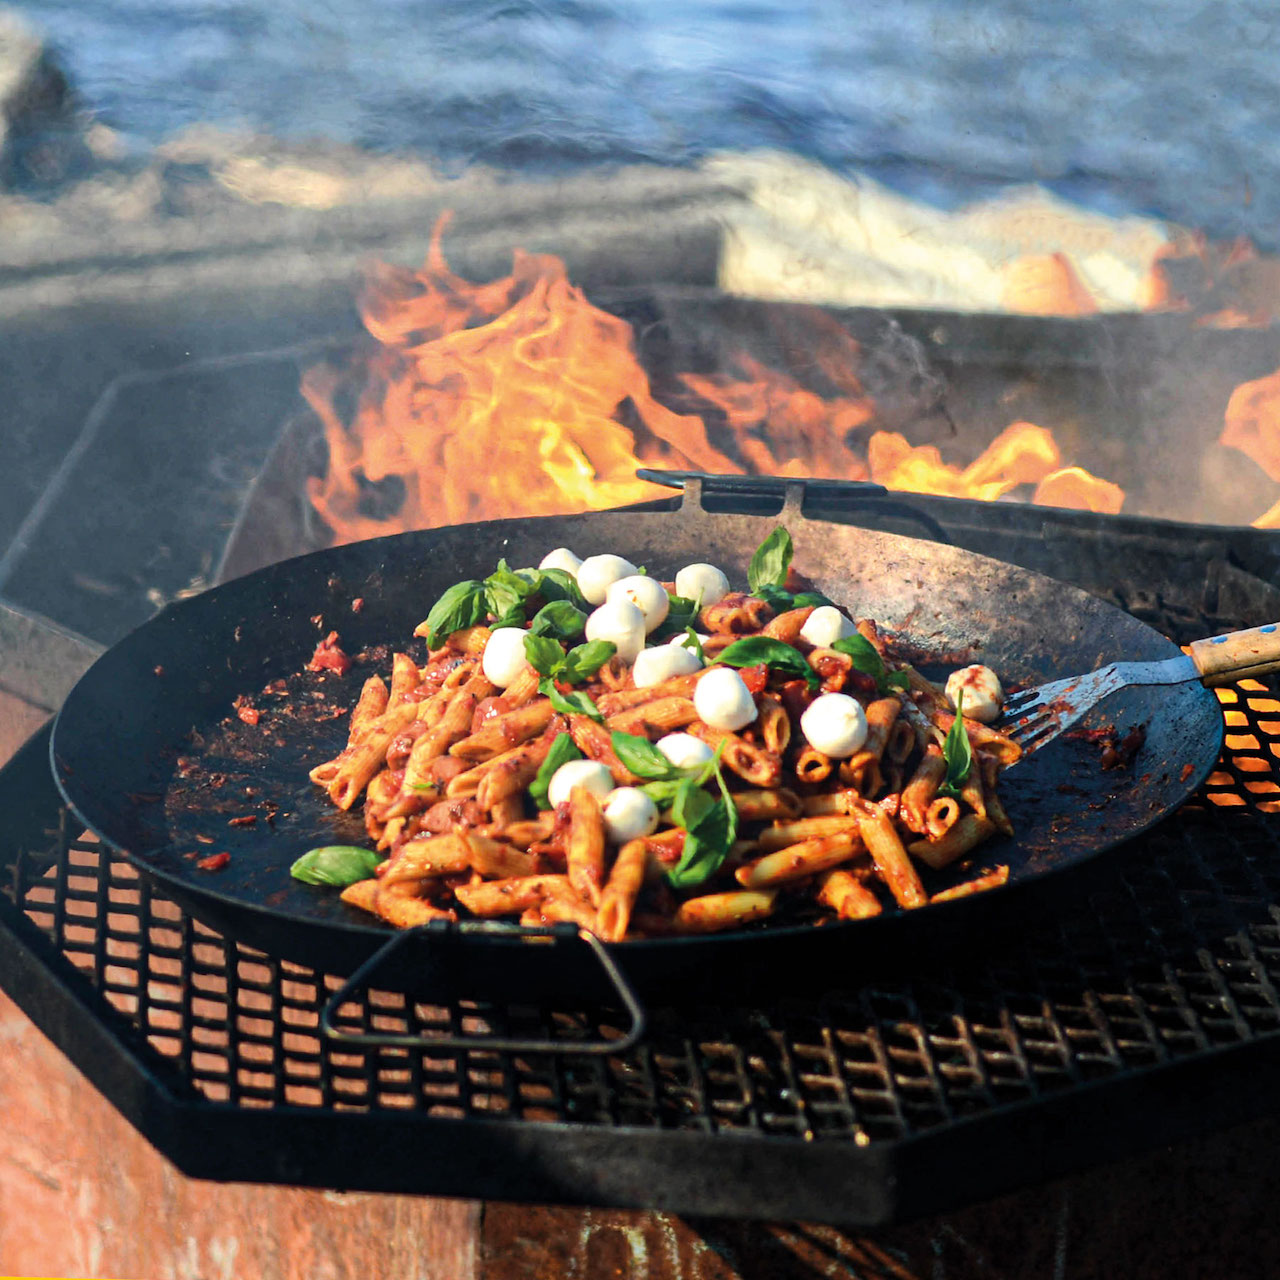 Большая костровая стальная сковорода паэльера Stabilotherm Forest Pan S6 46 см для жарки и приготовления пищи на открытом огне